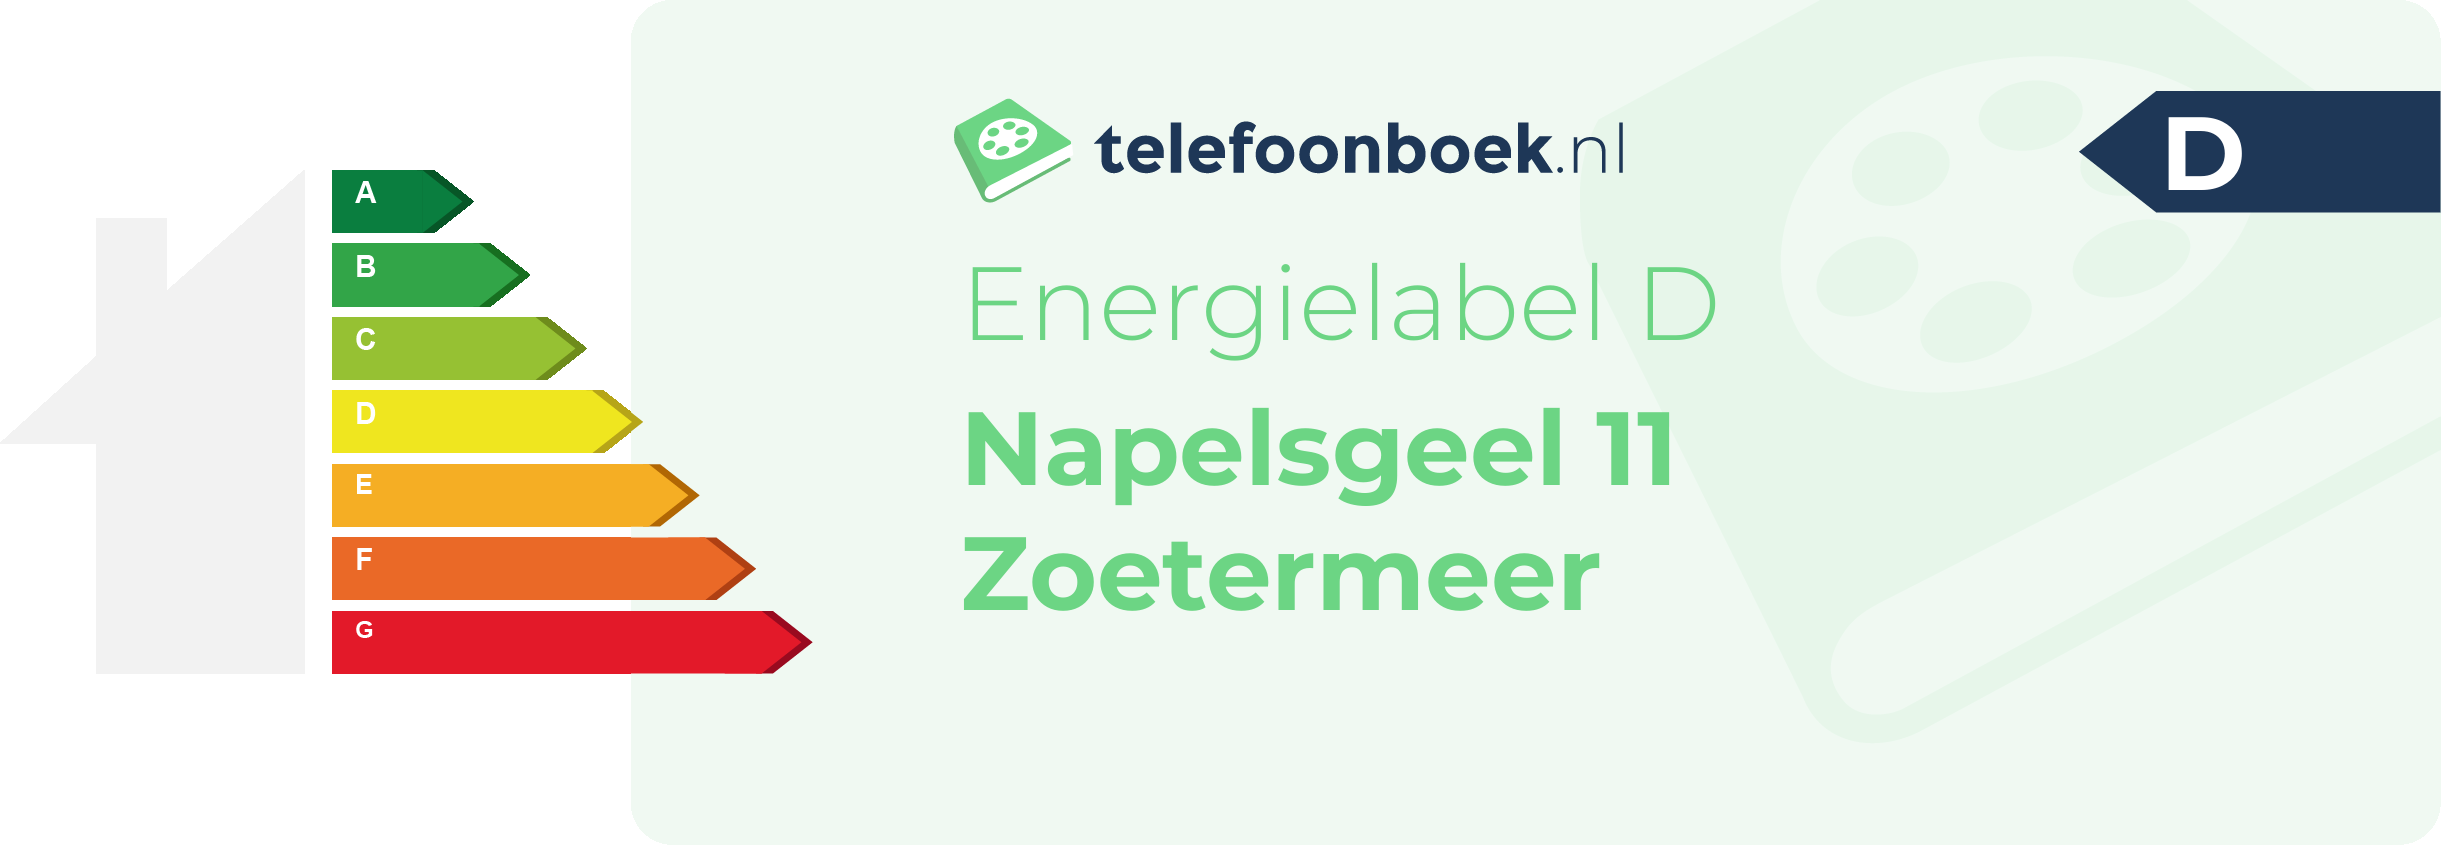 Energielabel Napelsgeel 11 Zoetermeer